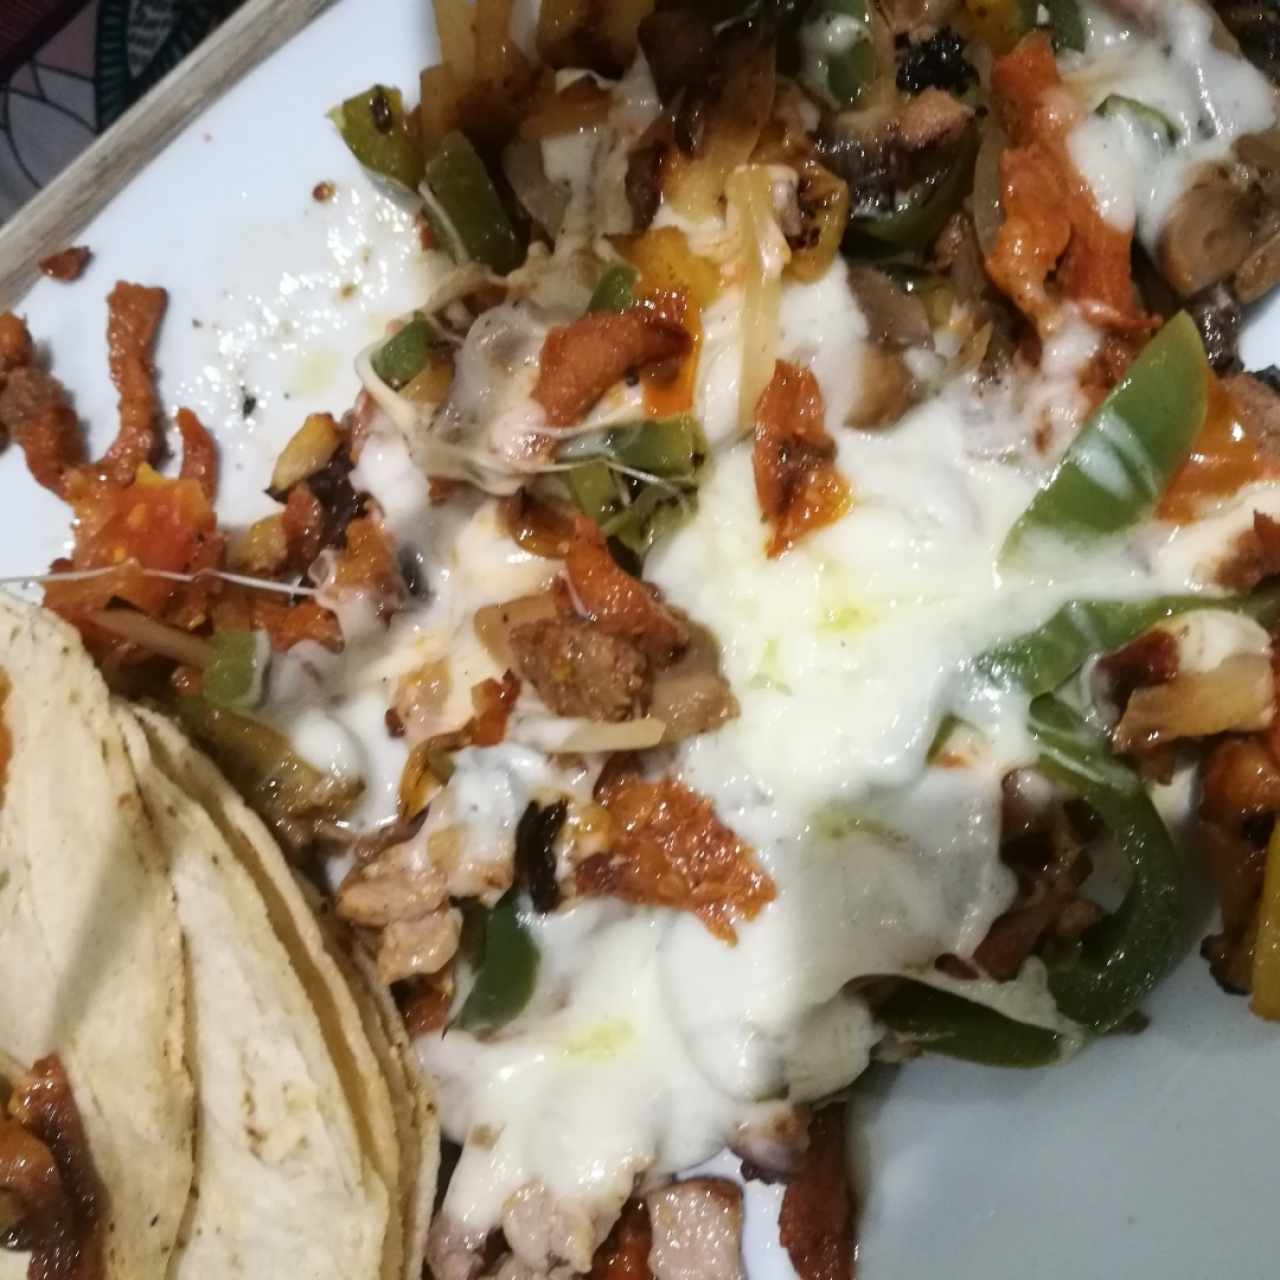 Tapatio - Tacos de tortilla suave